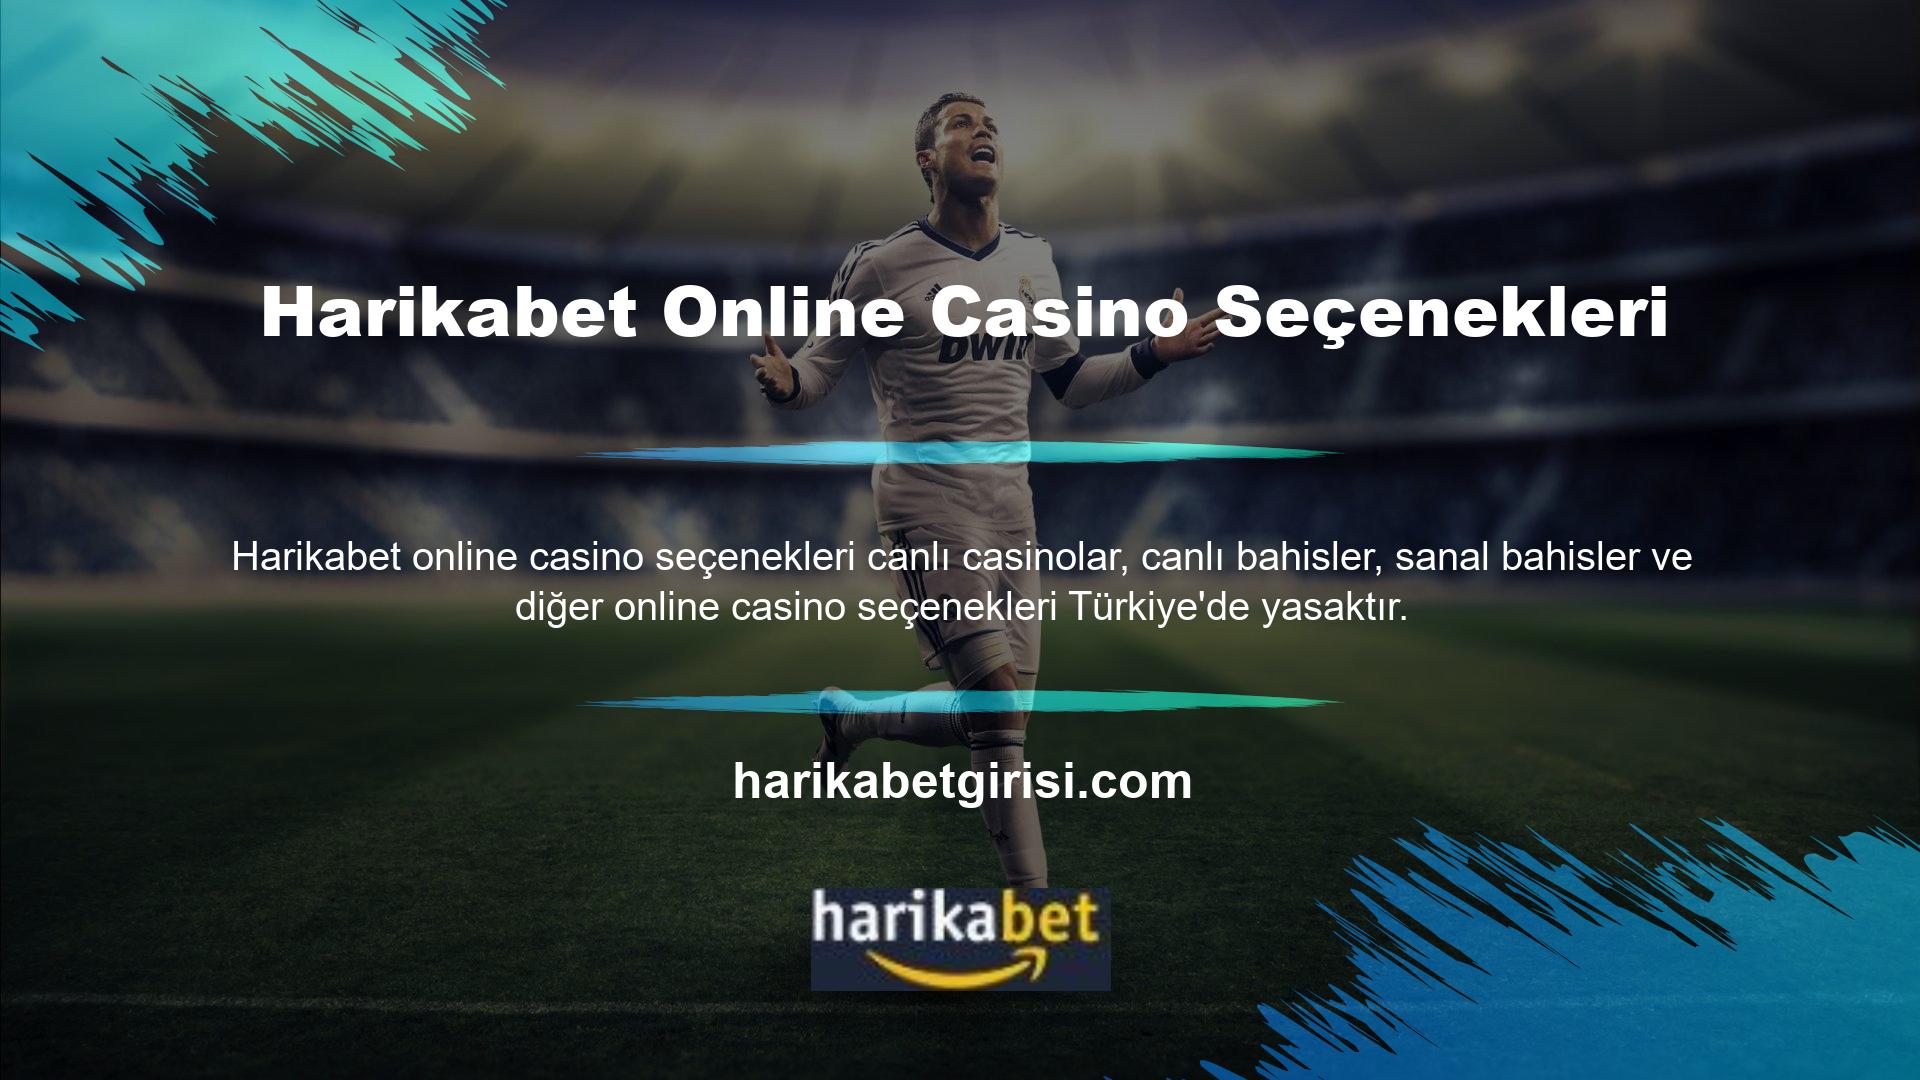 Çevrimiçi bir casino sitesi görünümünde olan Harikabet, gerçek casino oyunlarını en iyi şekilde oynatmaktadır